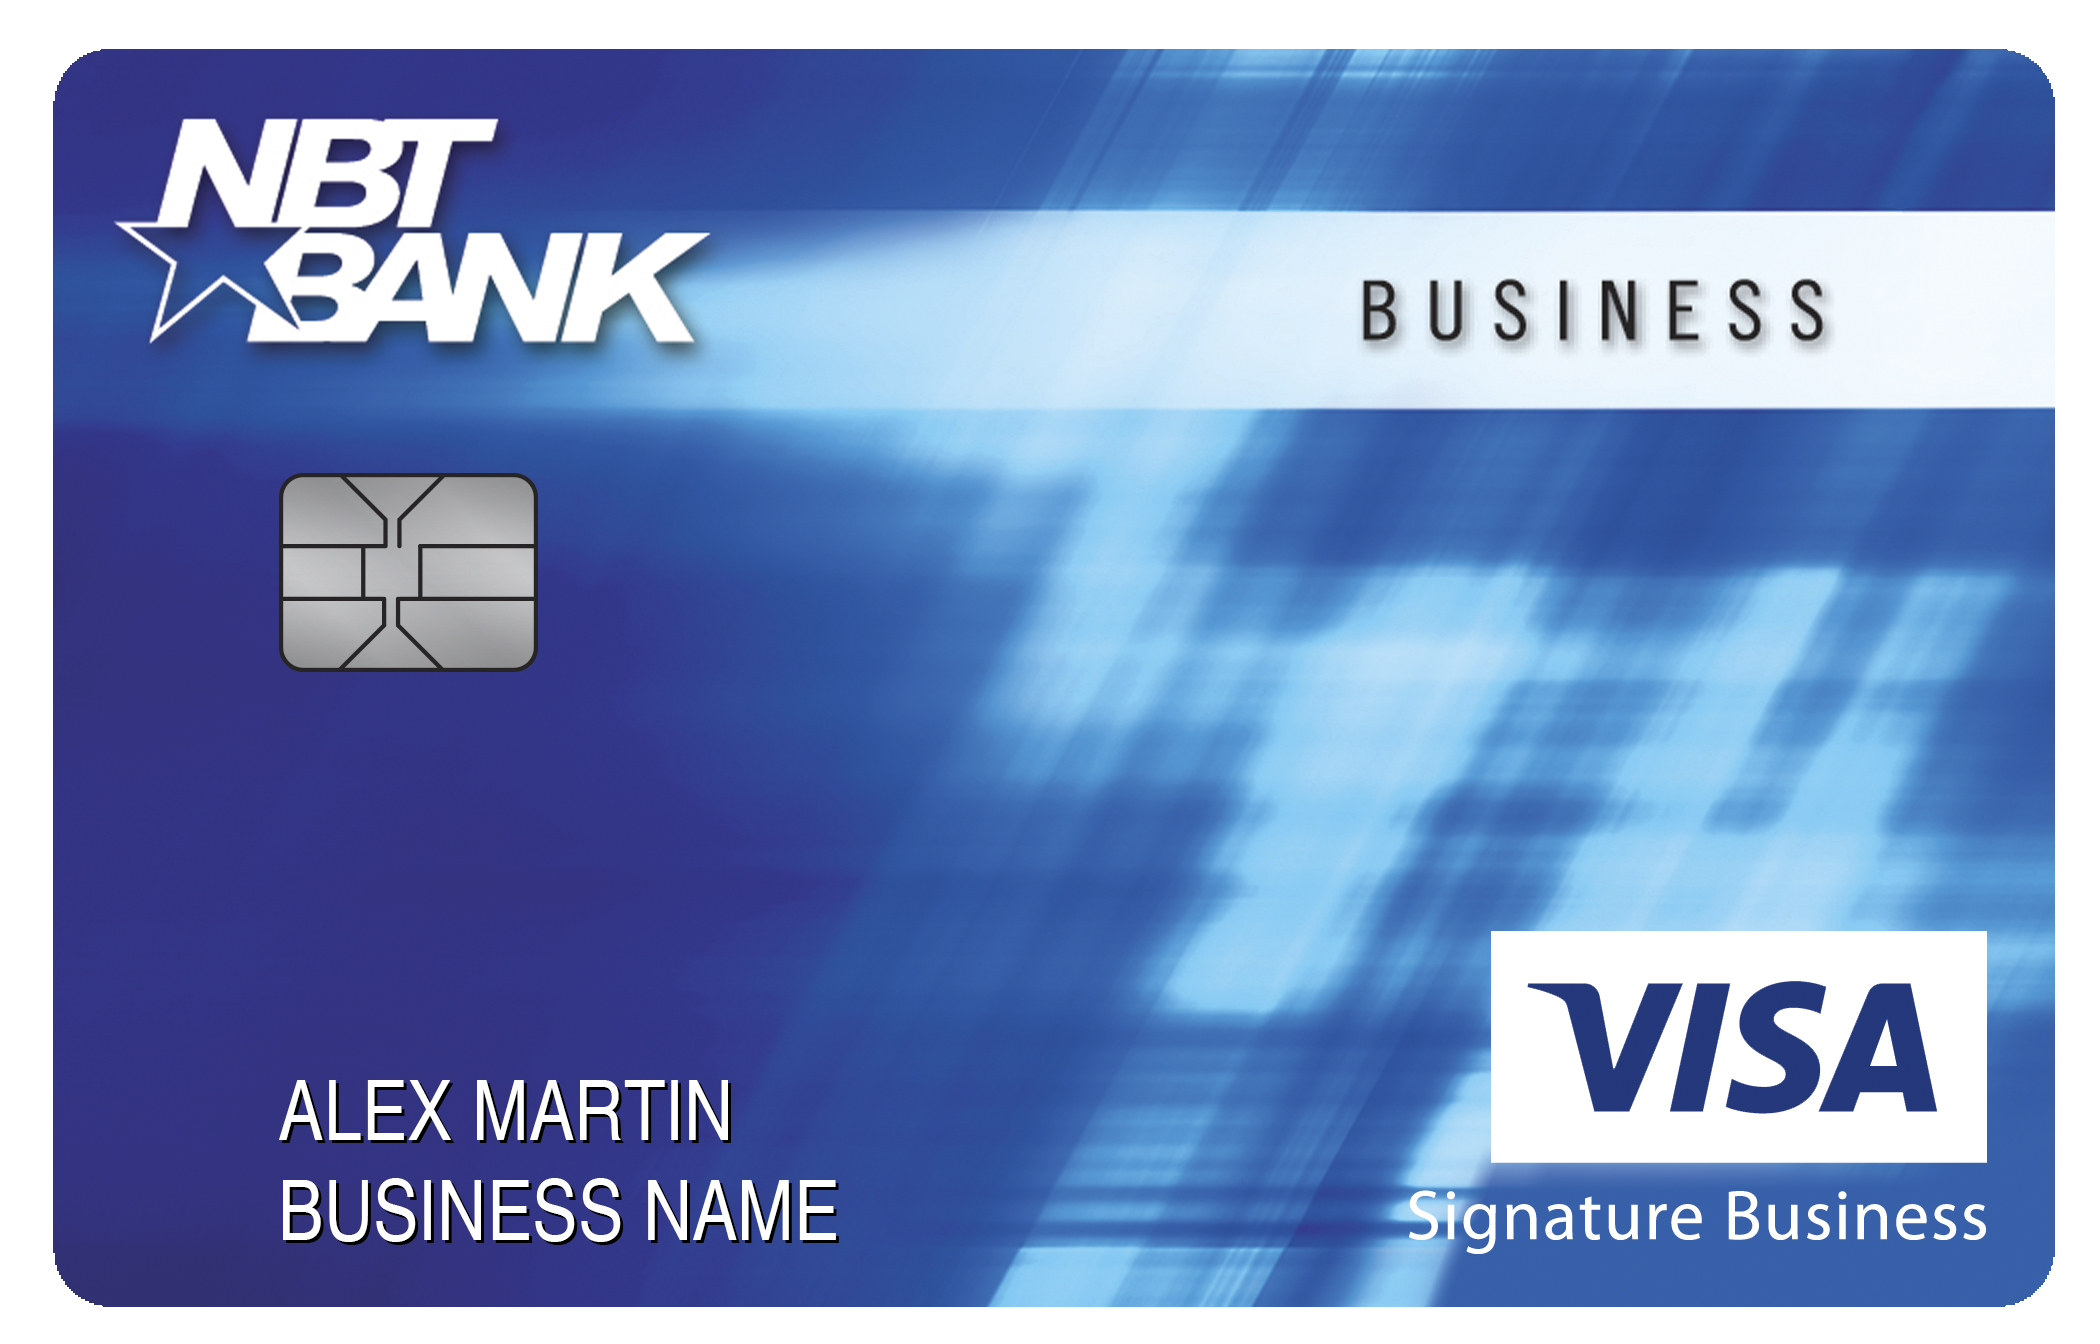 NBT Bank Smart Business Rewards Card